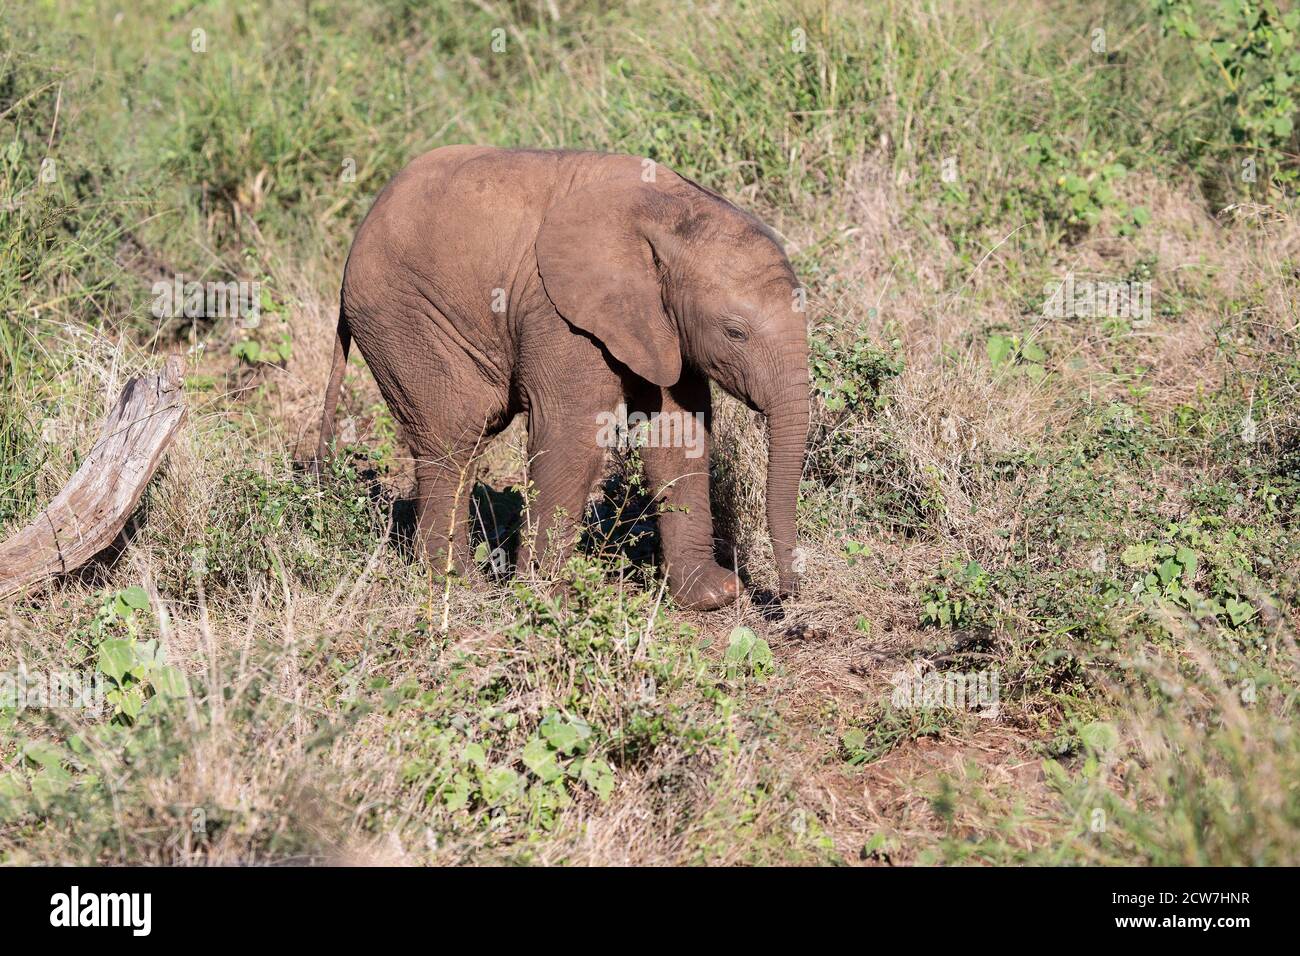 Ein afrikanisches Elefantenbaby Loxodonta africana erforscht die Savanne, die in der südafrikanischen Provinz KwaZulu Natal selbstständig Nahrung zu finden lernt Stockfoto